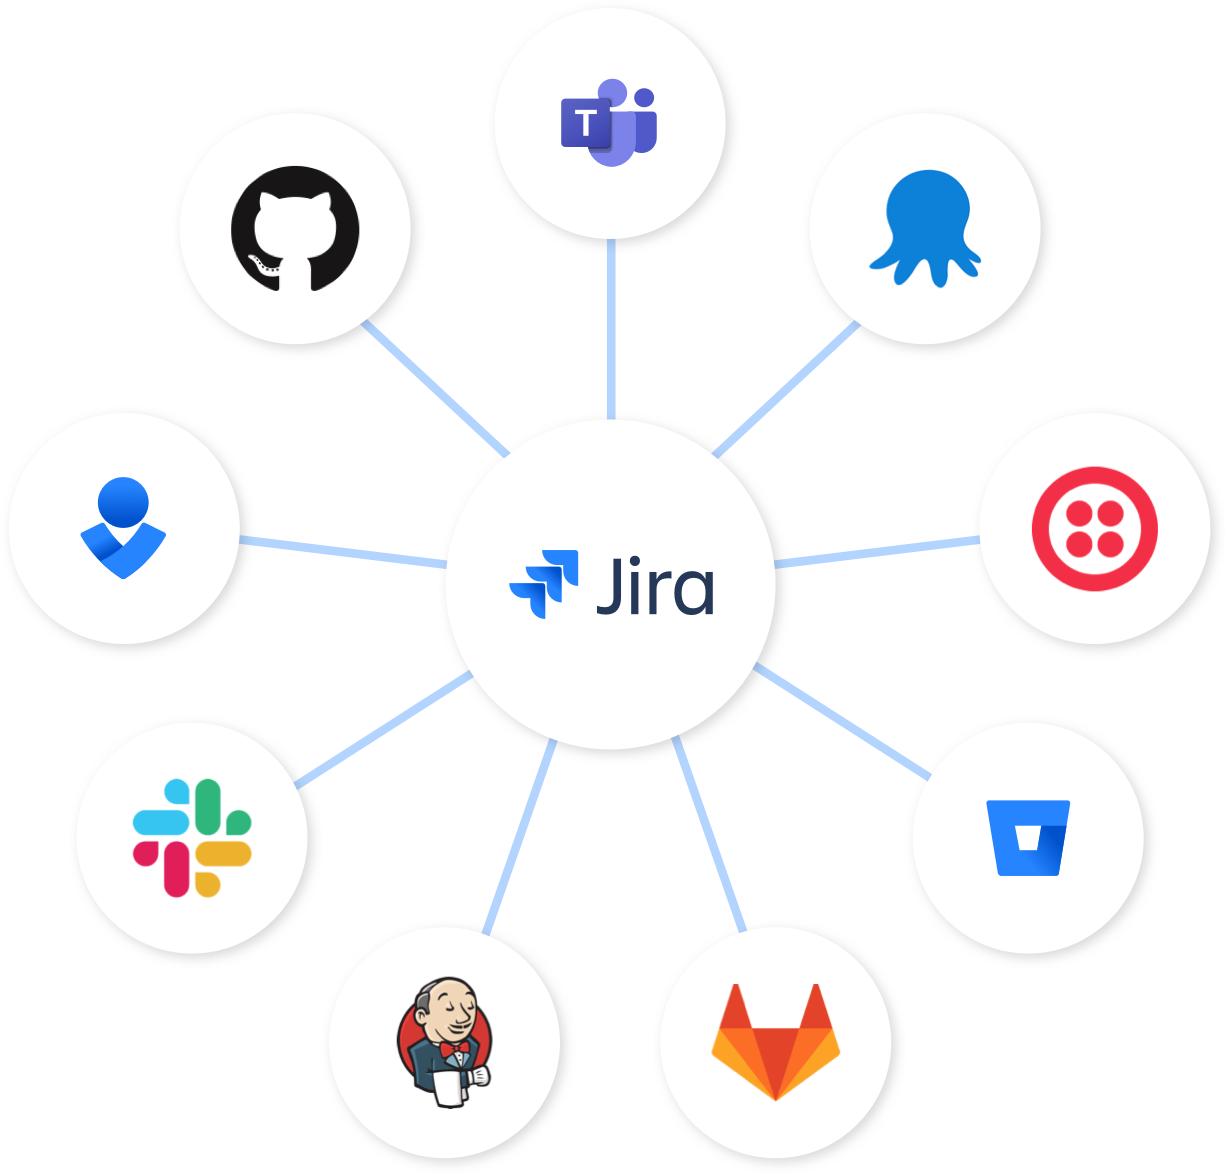 Jira-node: Jira in het midden en verbonden met Bitbucket, Slack en Opsgenie